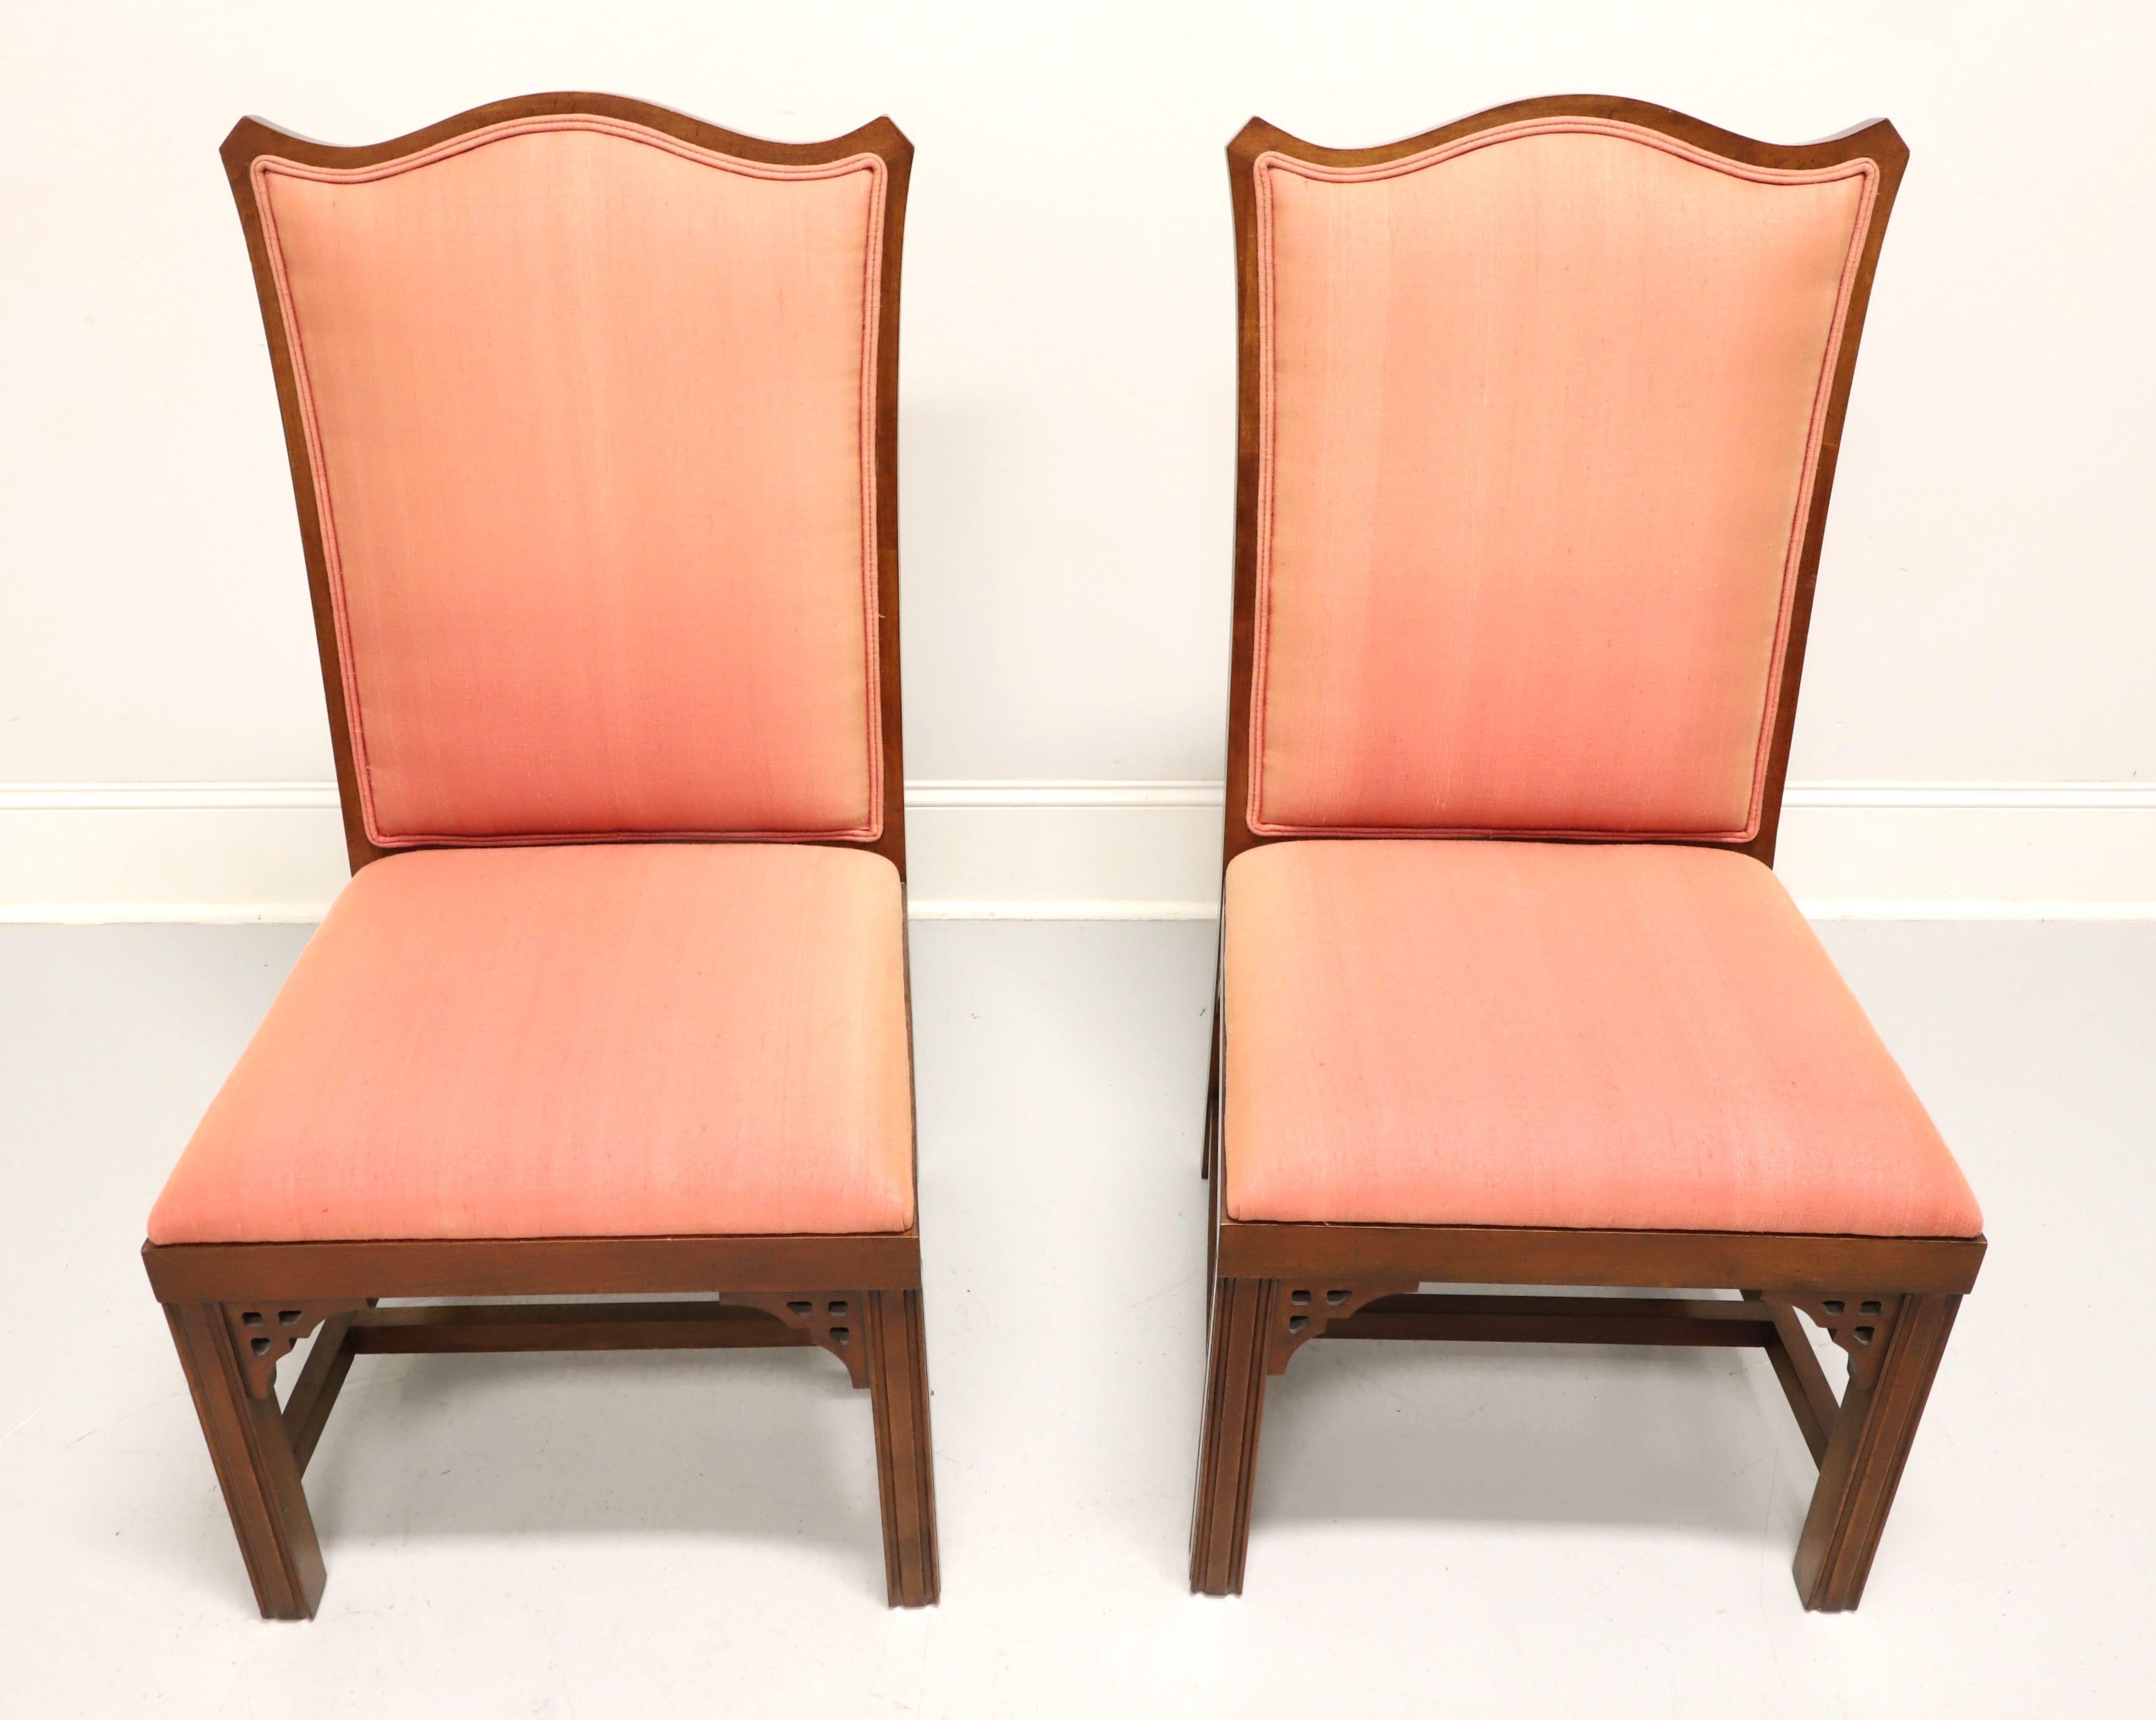 Ein Paar asiatisch inspirierte Esszimmerstühle, ohne Marke, wahrscheinlich Thomasville oder American of Martinsville. Kirschbaum mit dekorativen Laubsägearbeiten unter der Schürze an den Ecken, geschnitztes Design an der Stuhllehne, lachsfarbener